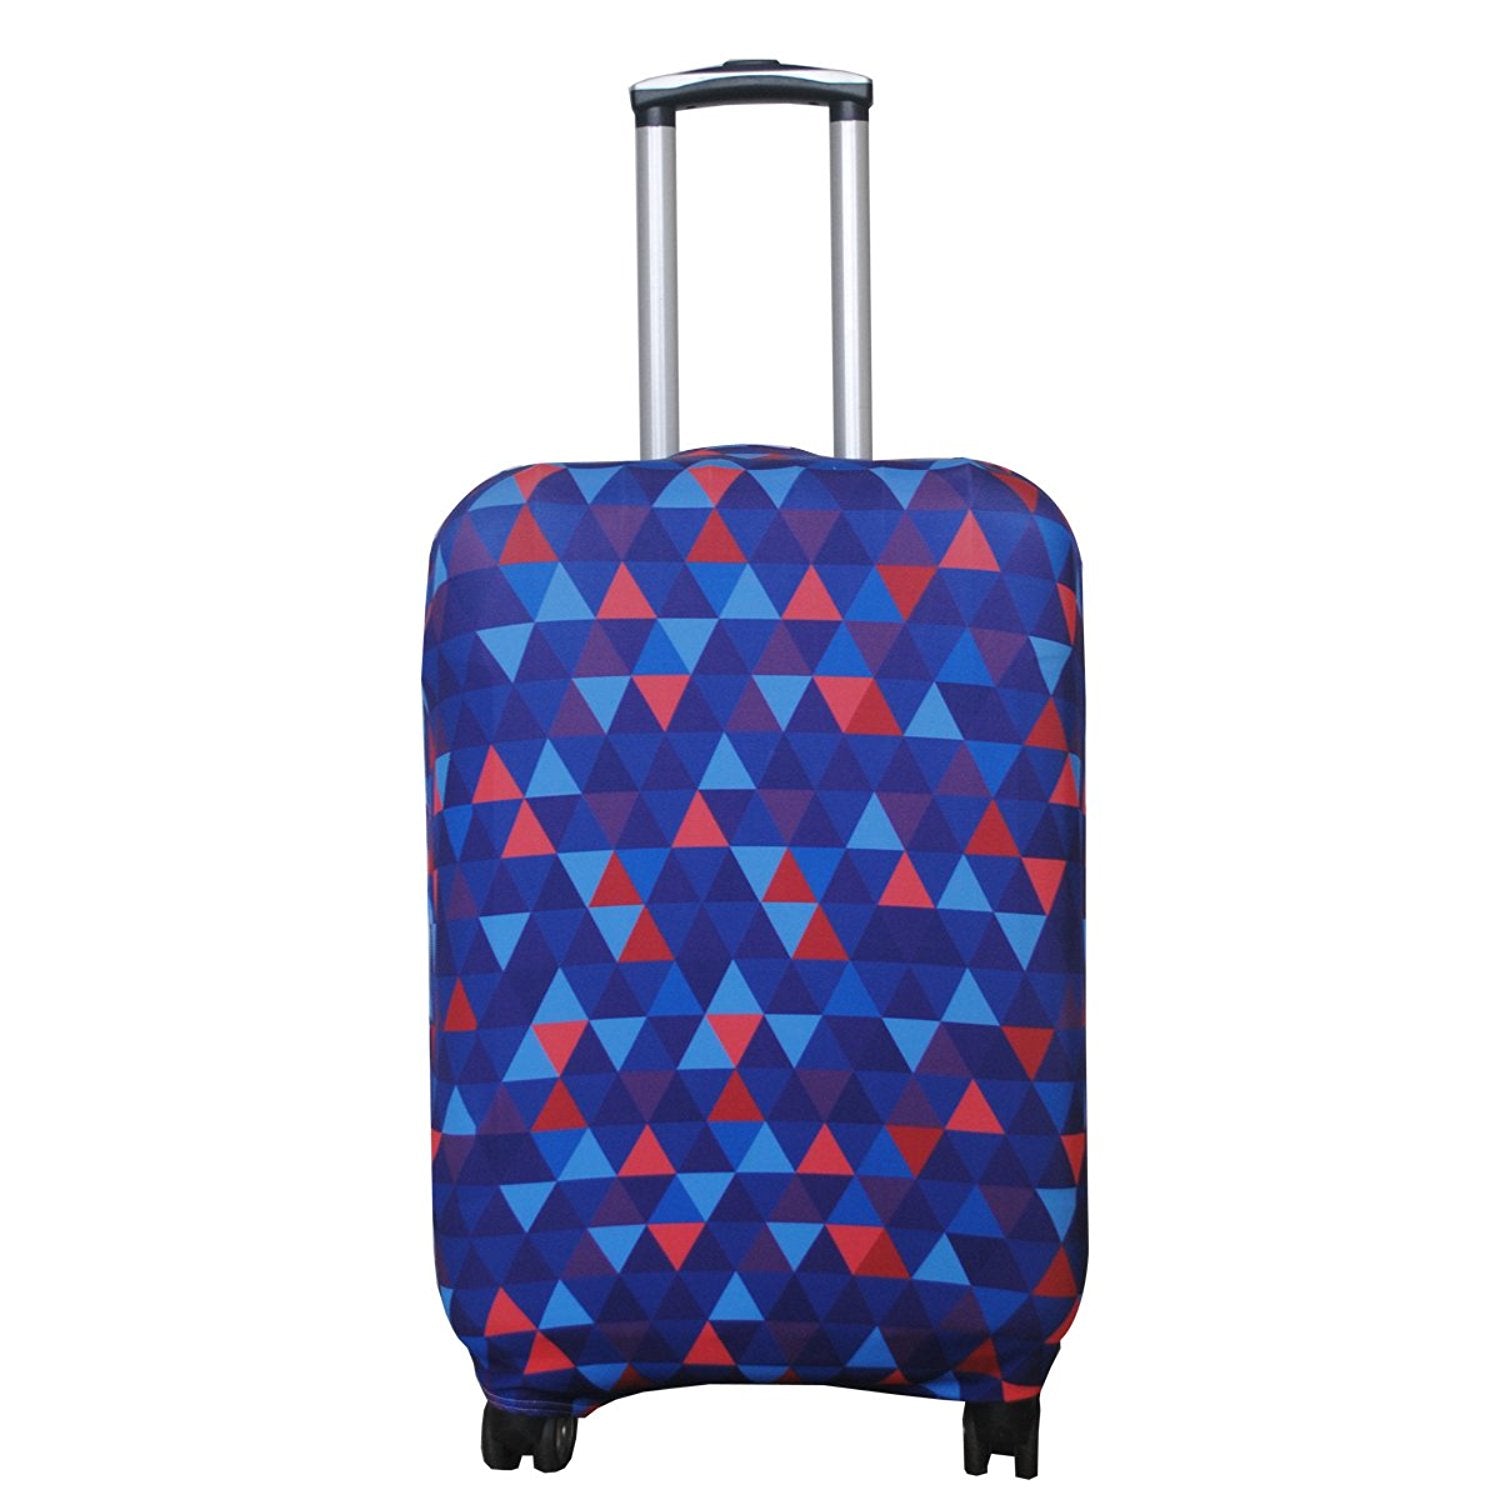 L(27-30 inch luggage) / Mosaic